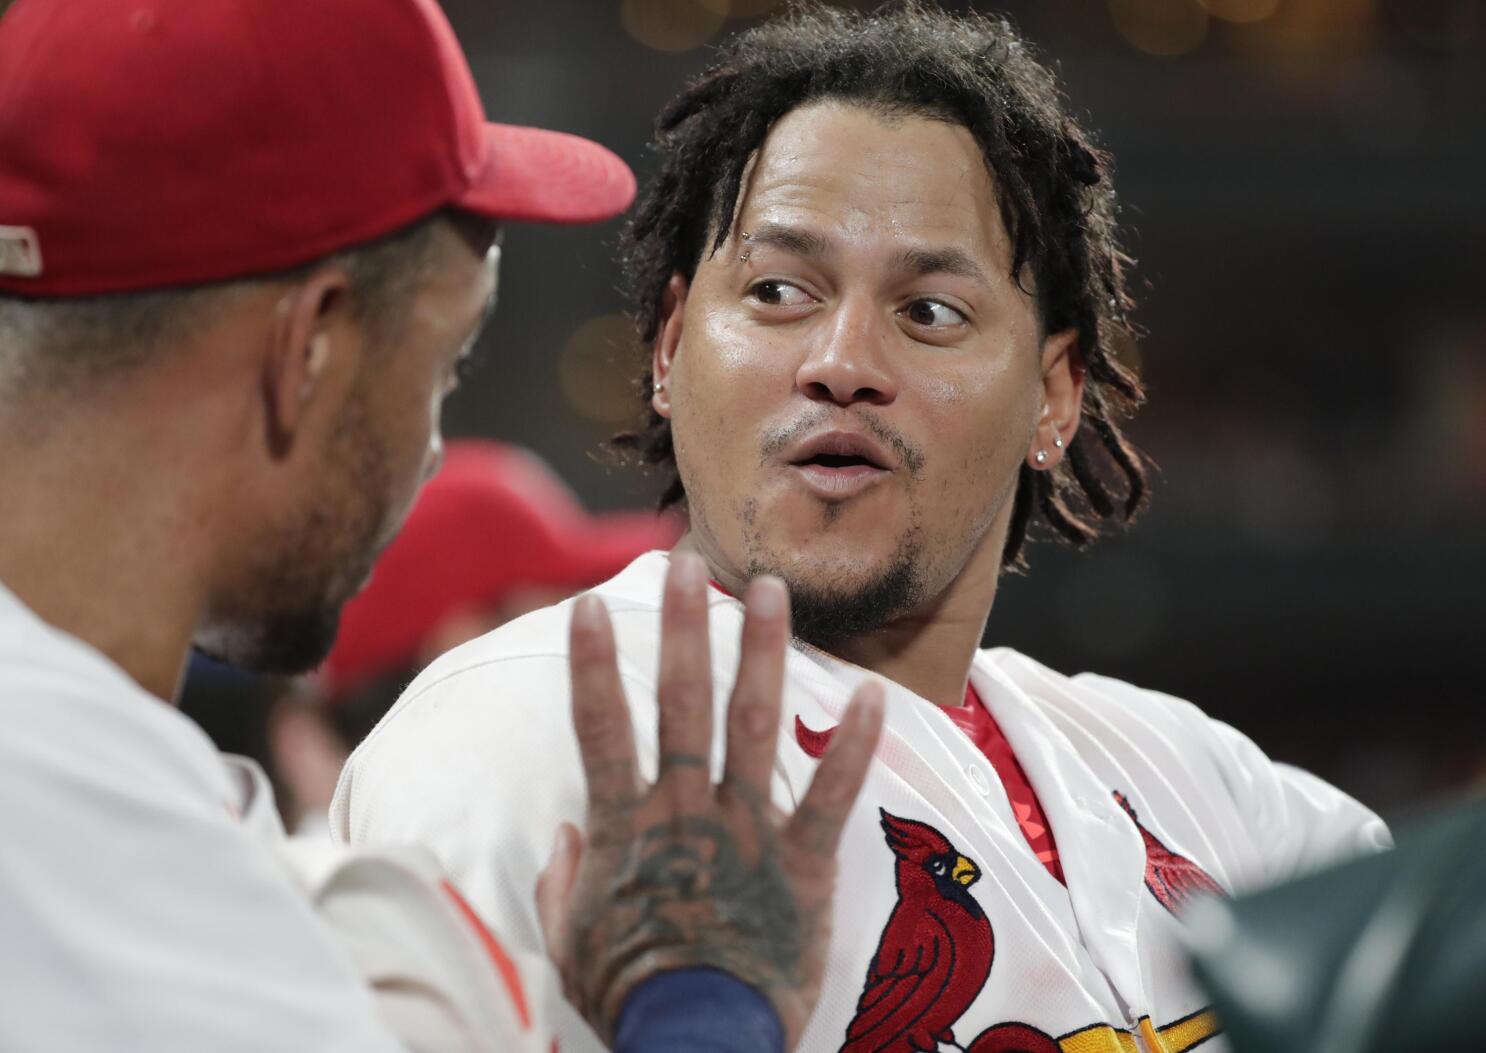 St. Louis Cardinals Nolan Arenado looks skywards after touching